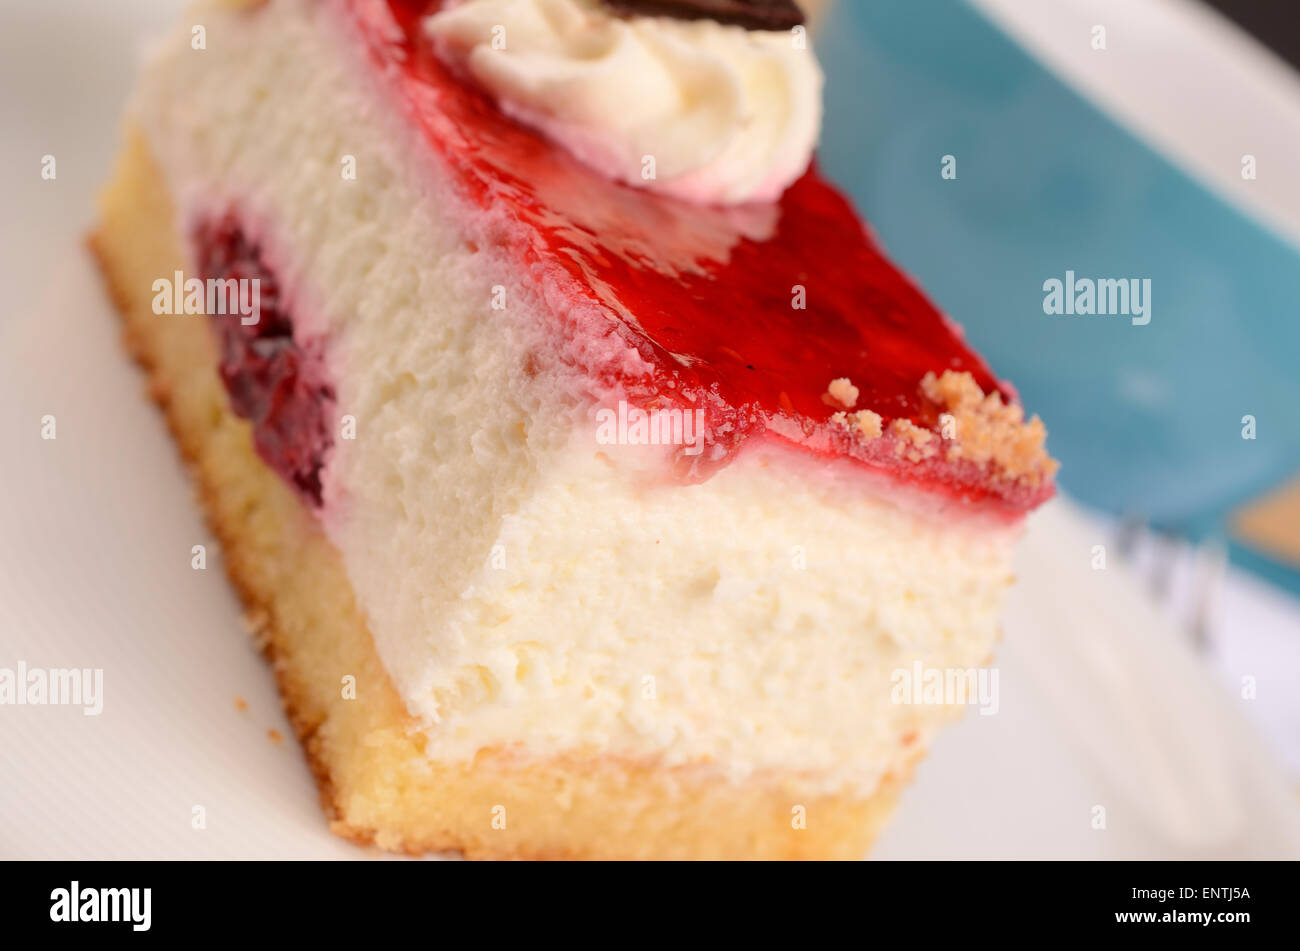 Cerca de una dulce tarta de frambuesa sobre una placa blanca. Foto de stock